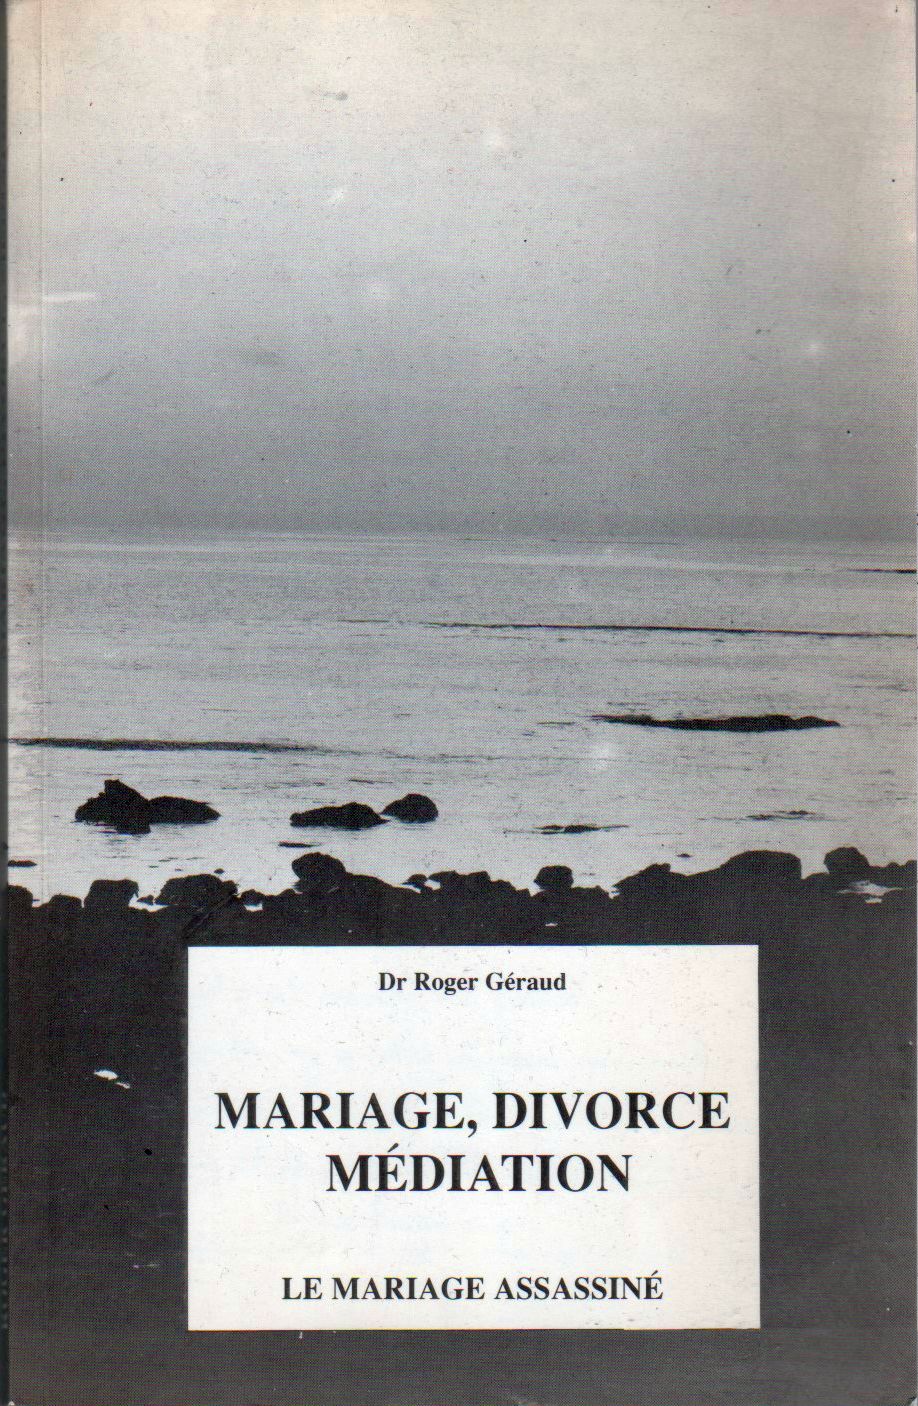 Le mariage assassiné - Roger Géraud - 1990